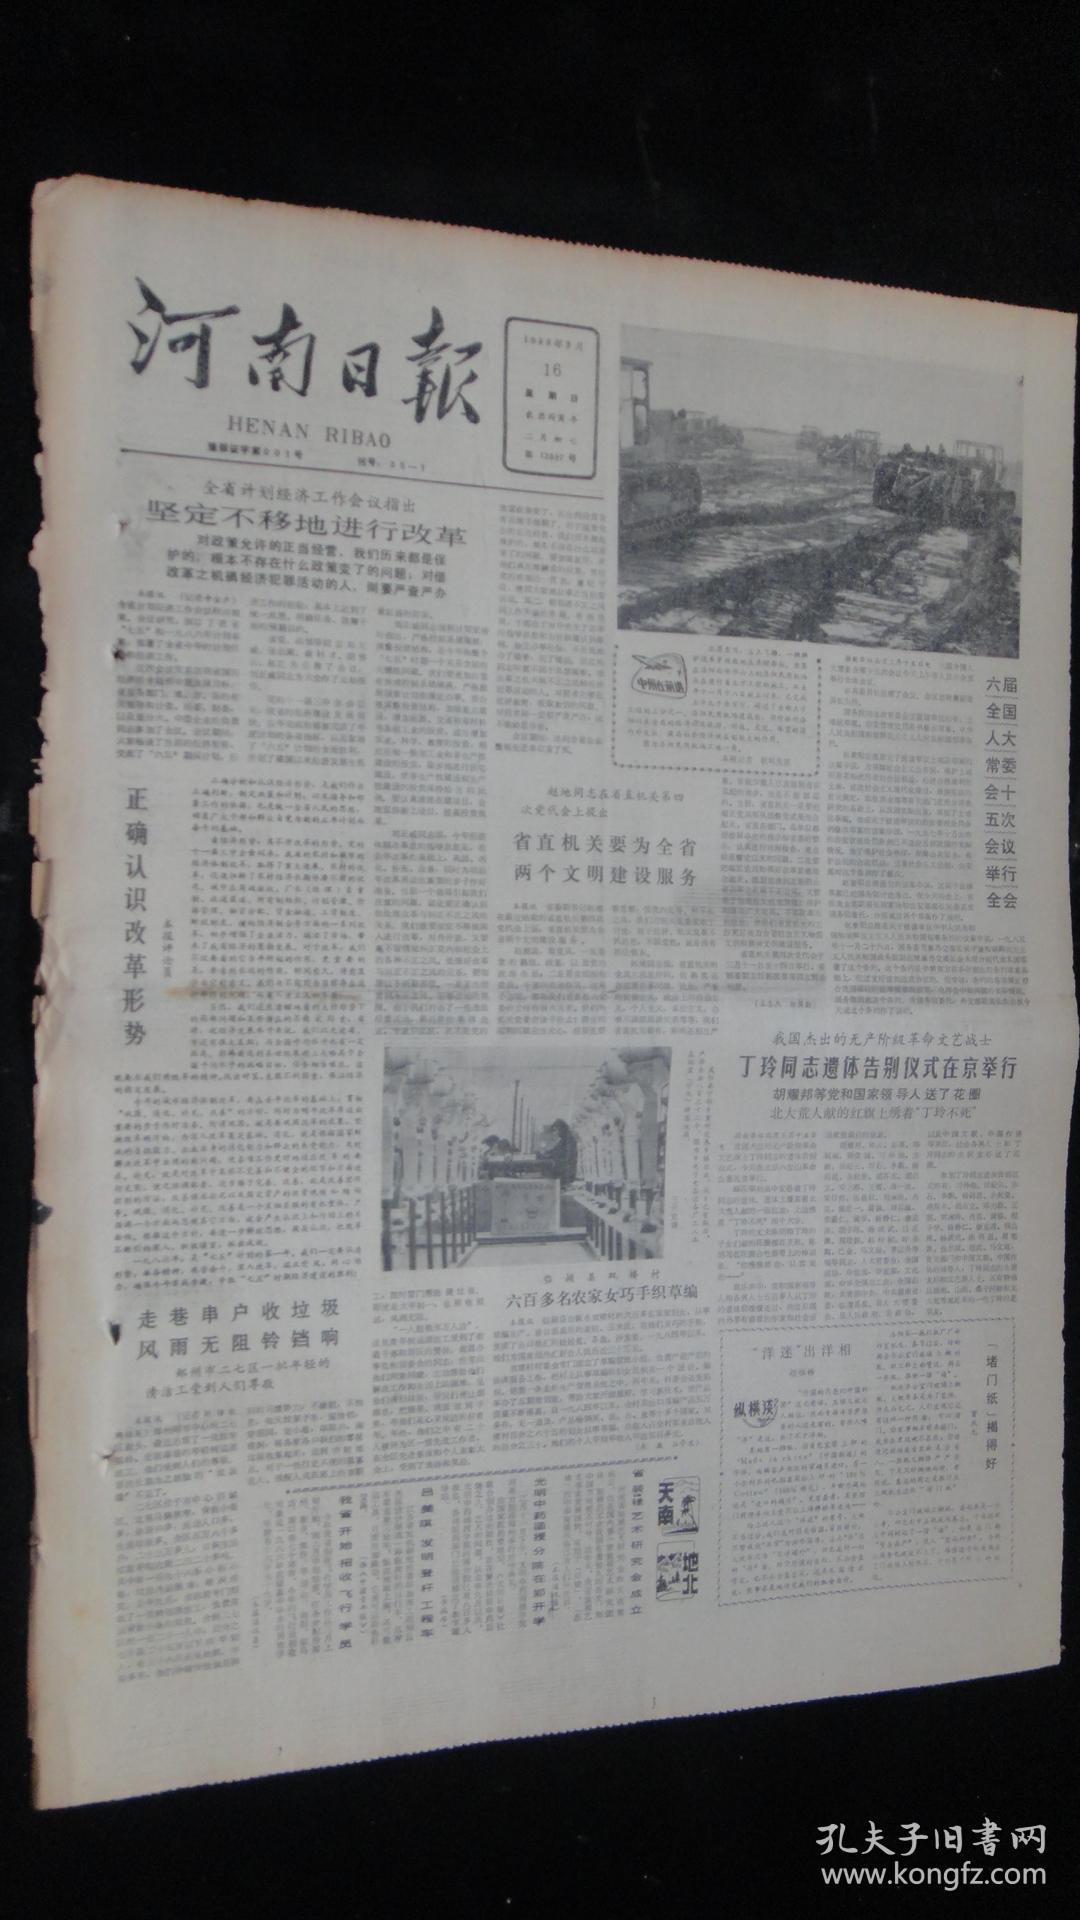 【报纸】河南日报 1986年3月16日【丁玲同志